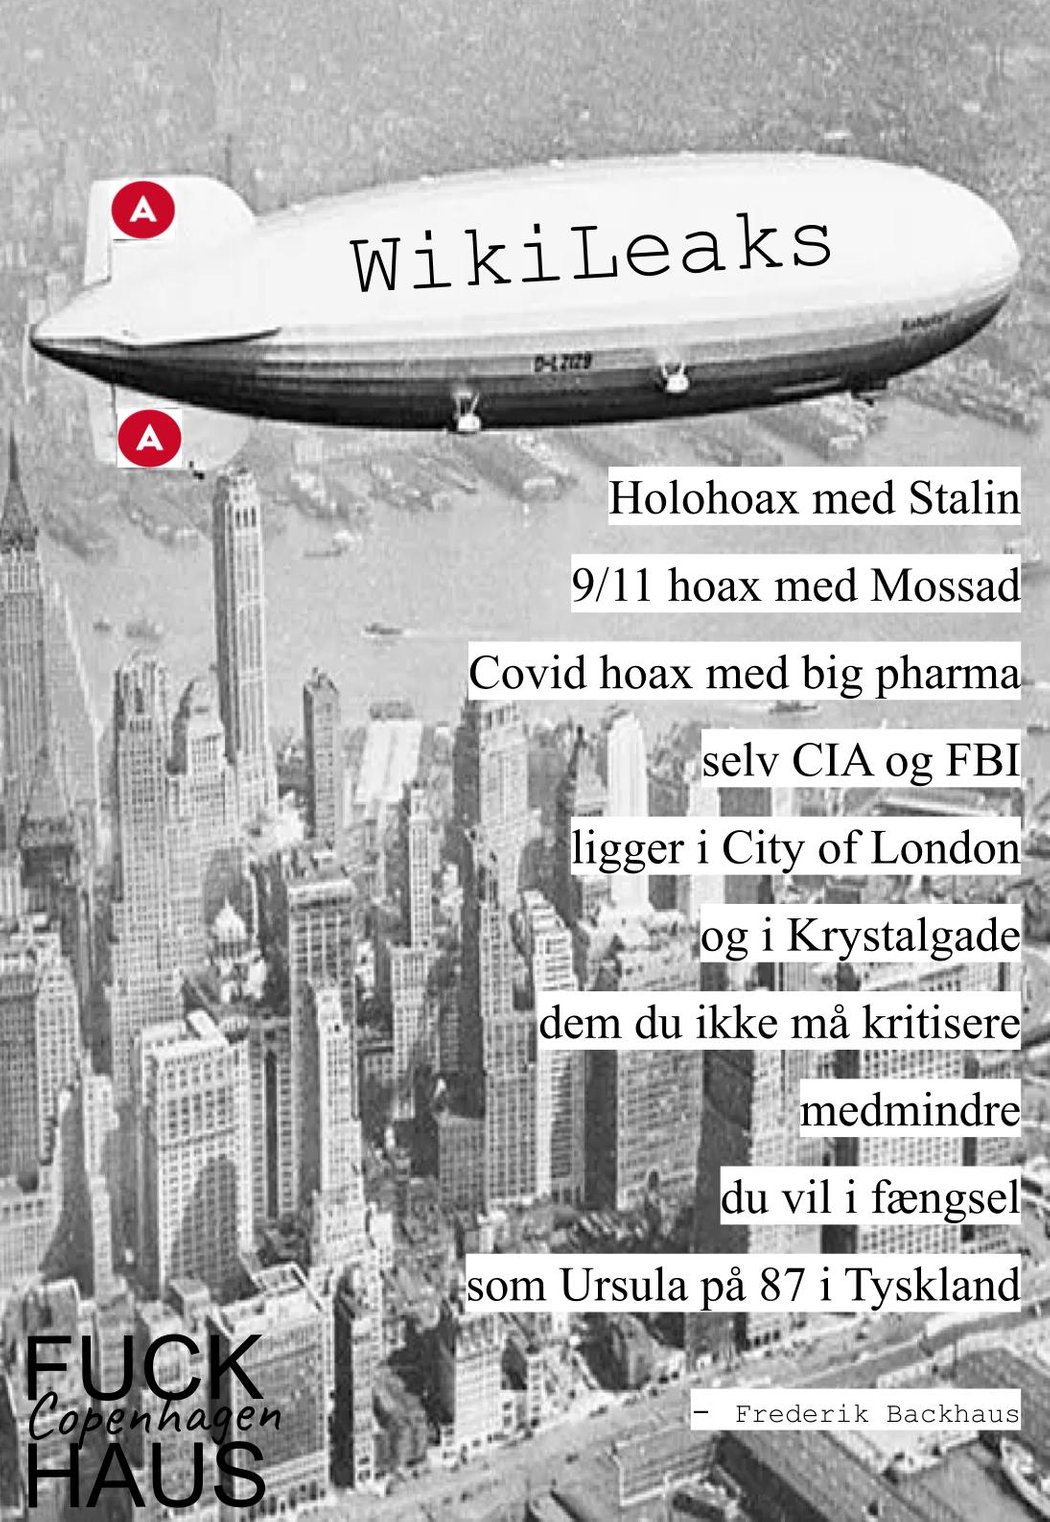 "WikiLeaks" by Frederik Backhaus